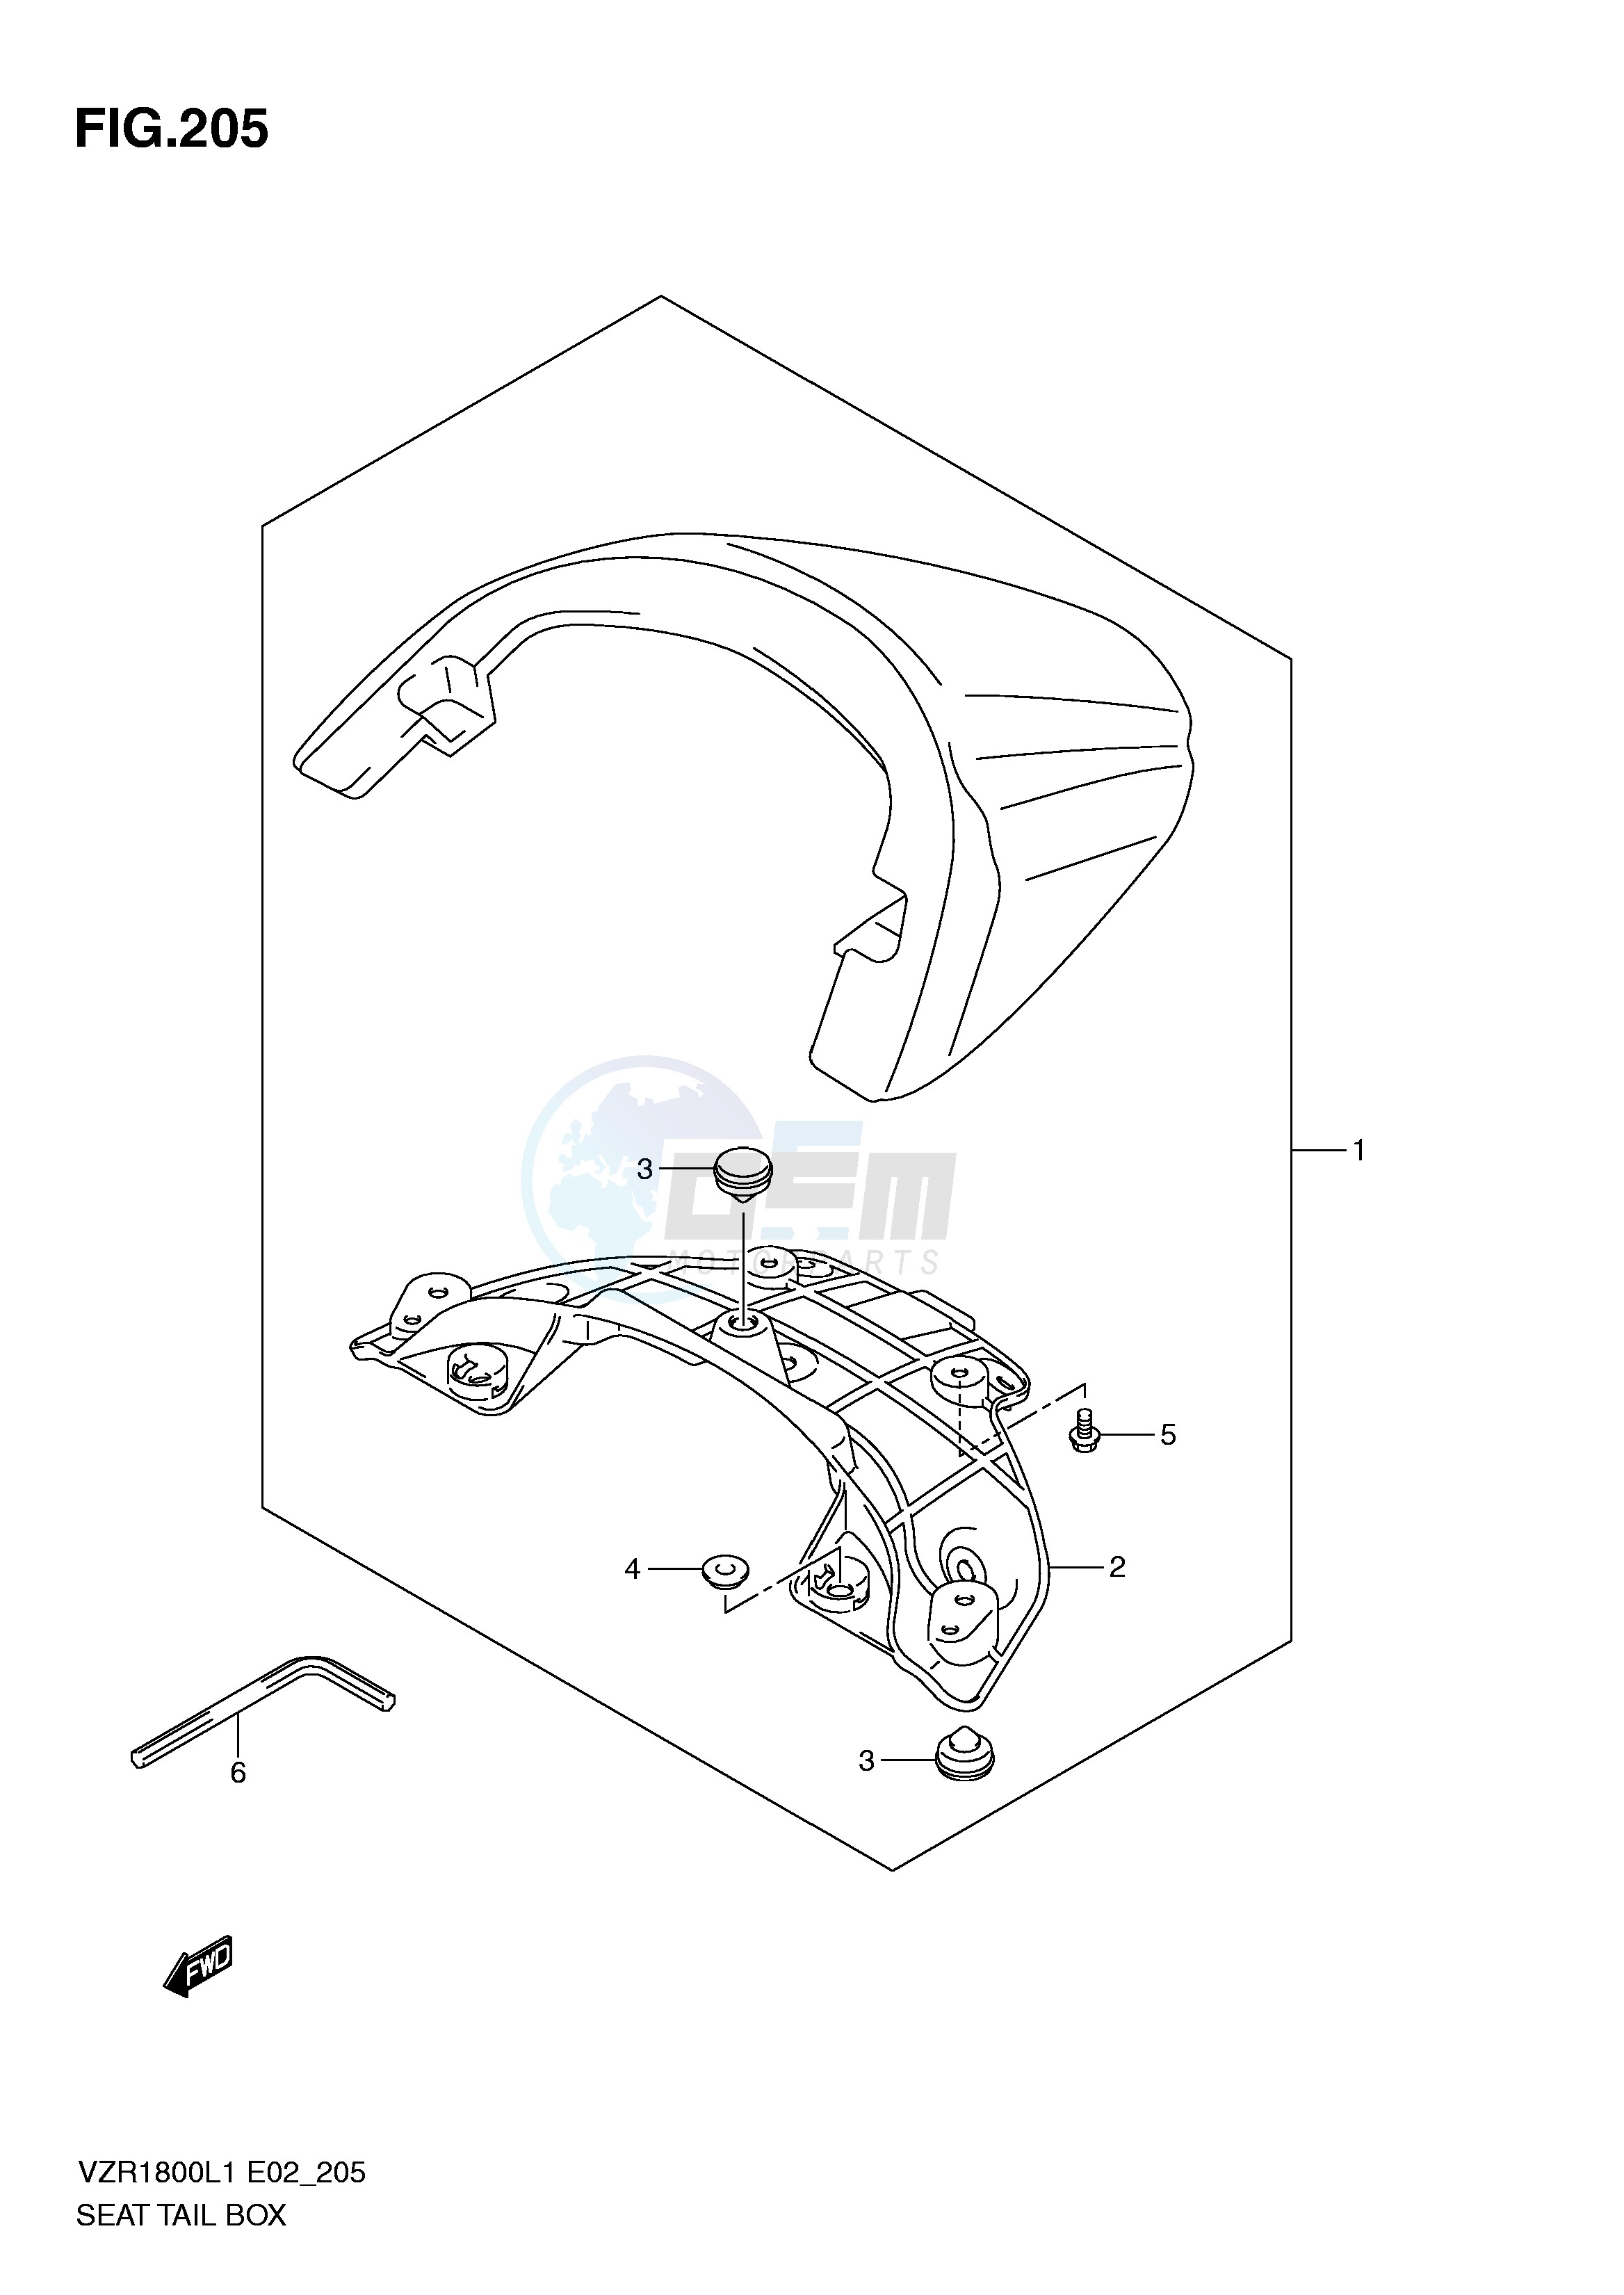 SEAT TAIL BOX (VZR1800ZL1 E2) blueprint